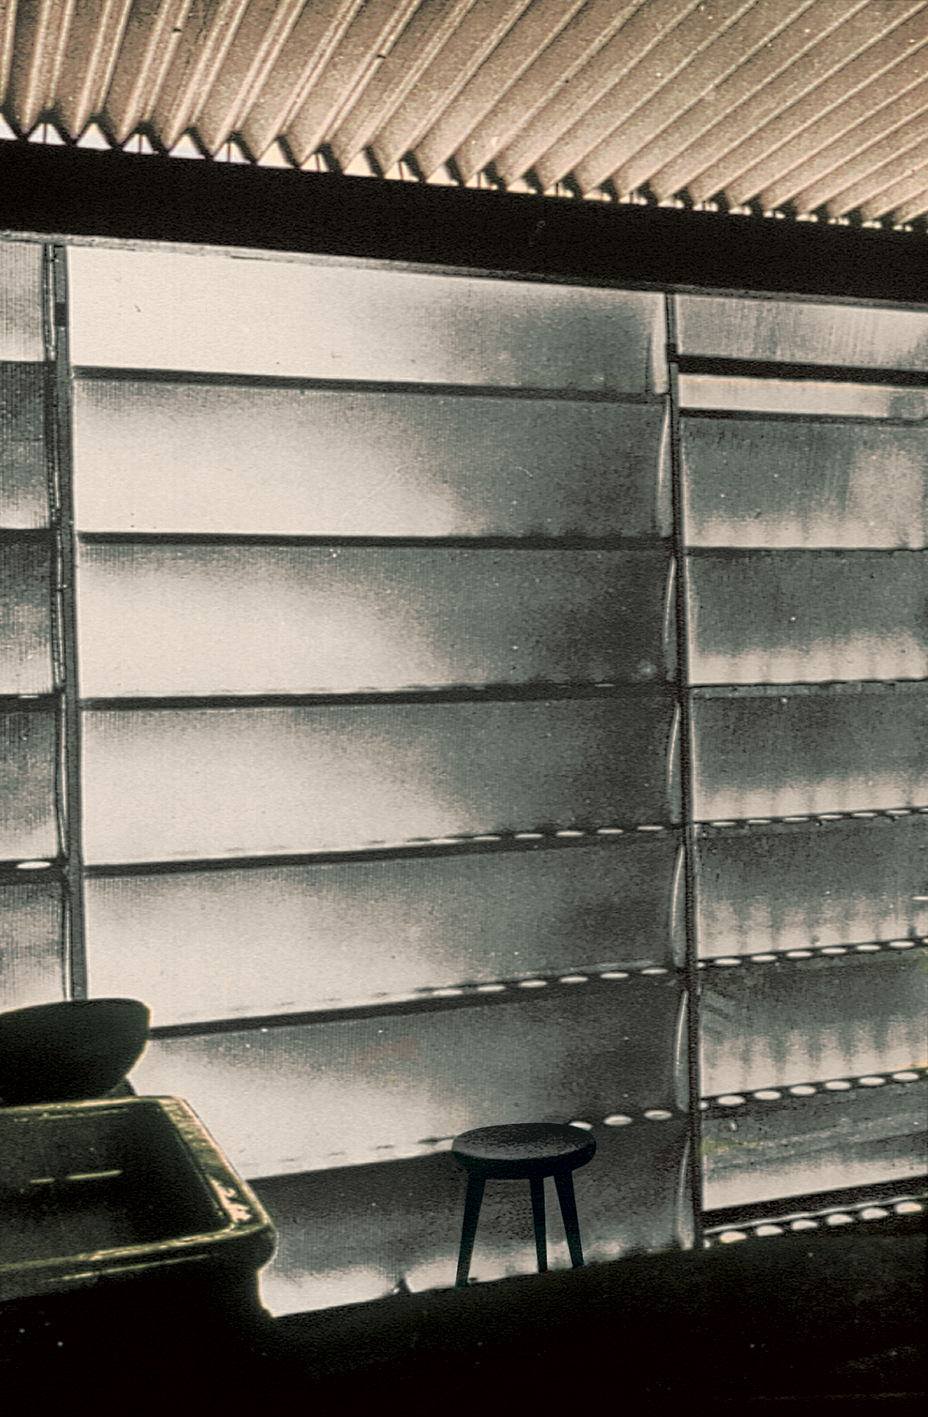 Écoles industrialisées du Cameroun et logements de fonction (Atelier LWD Lagneau, Weill, Dimitrijevic, arch. 1964). Façades brise-soleil conçues par Jean Prouvé.